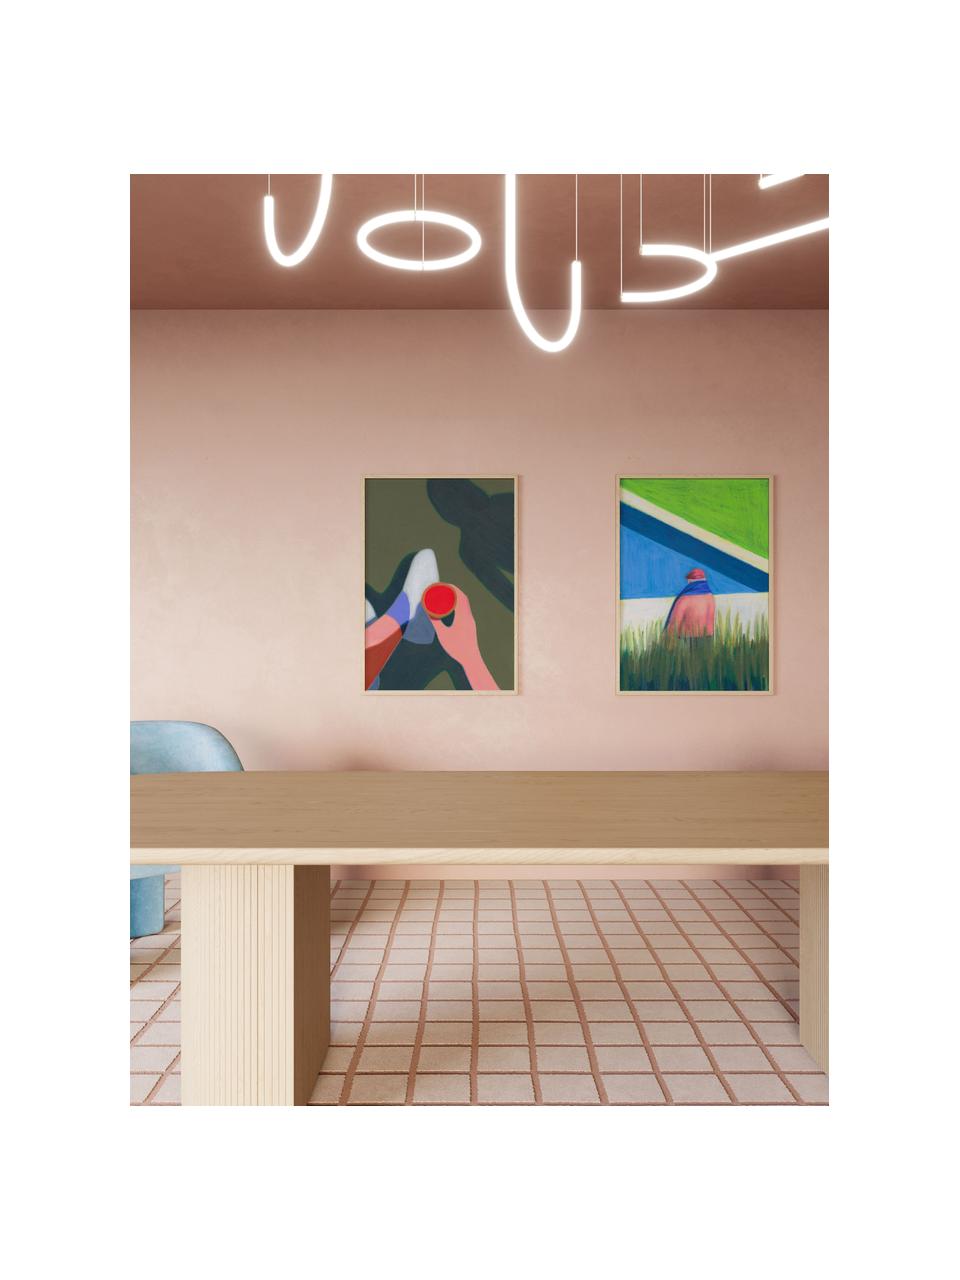 Poster Les Vacances 01, 210 g de papier mat de la marque Hahnemühle, impression numérique avec 10 couleurs résistantes aux UV, Vert olive, multicolore, larg. 30 x haut. 40 cm